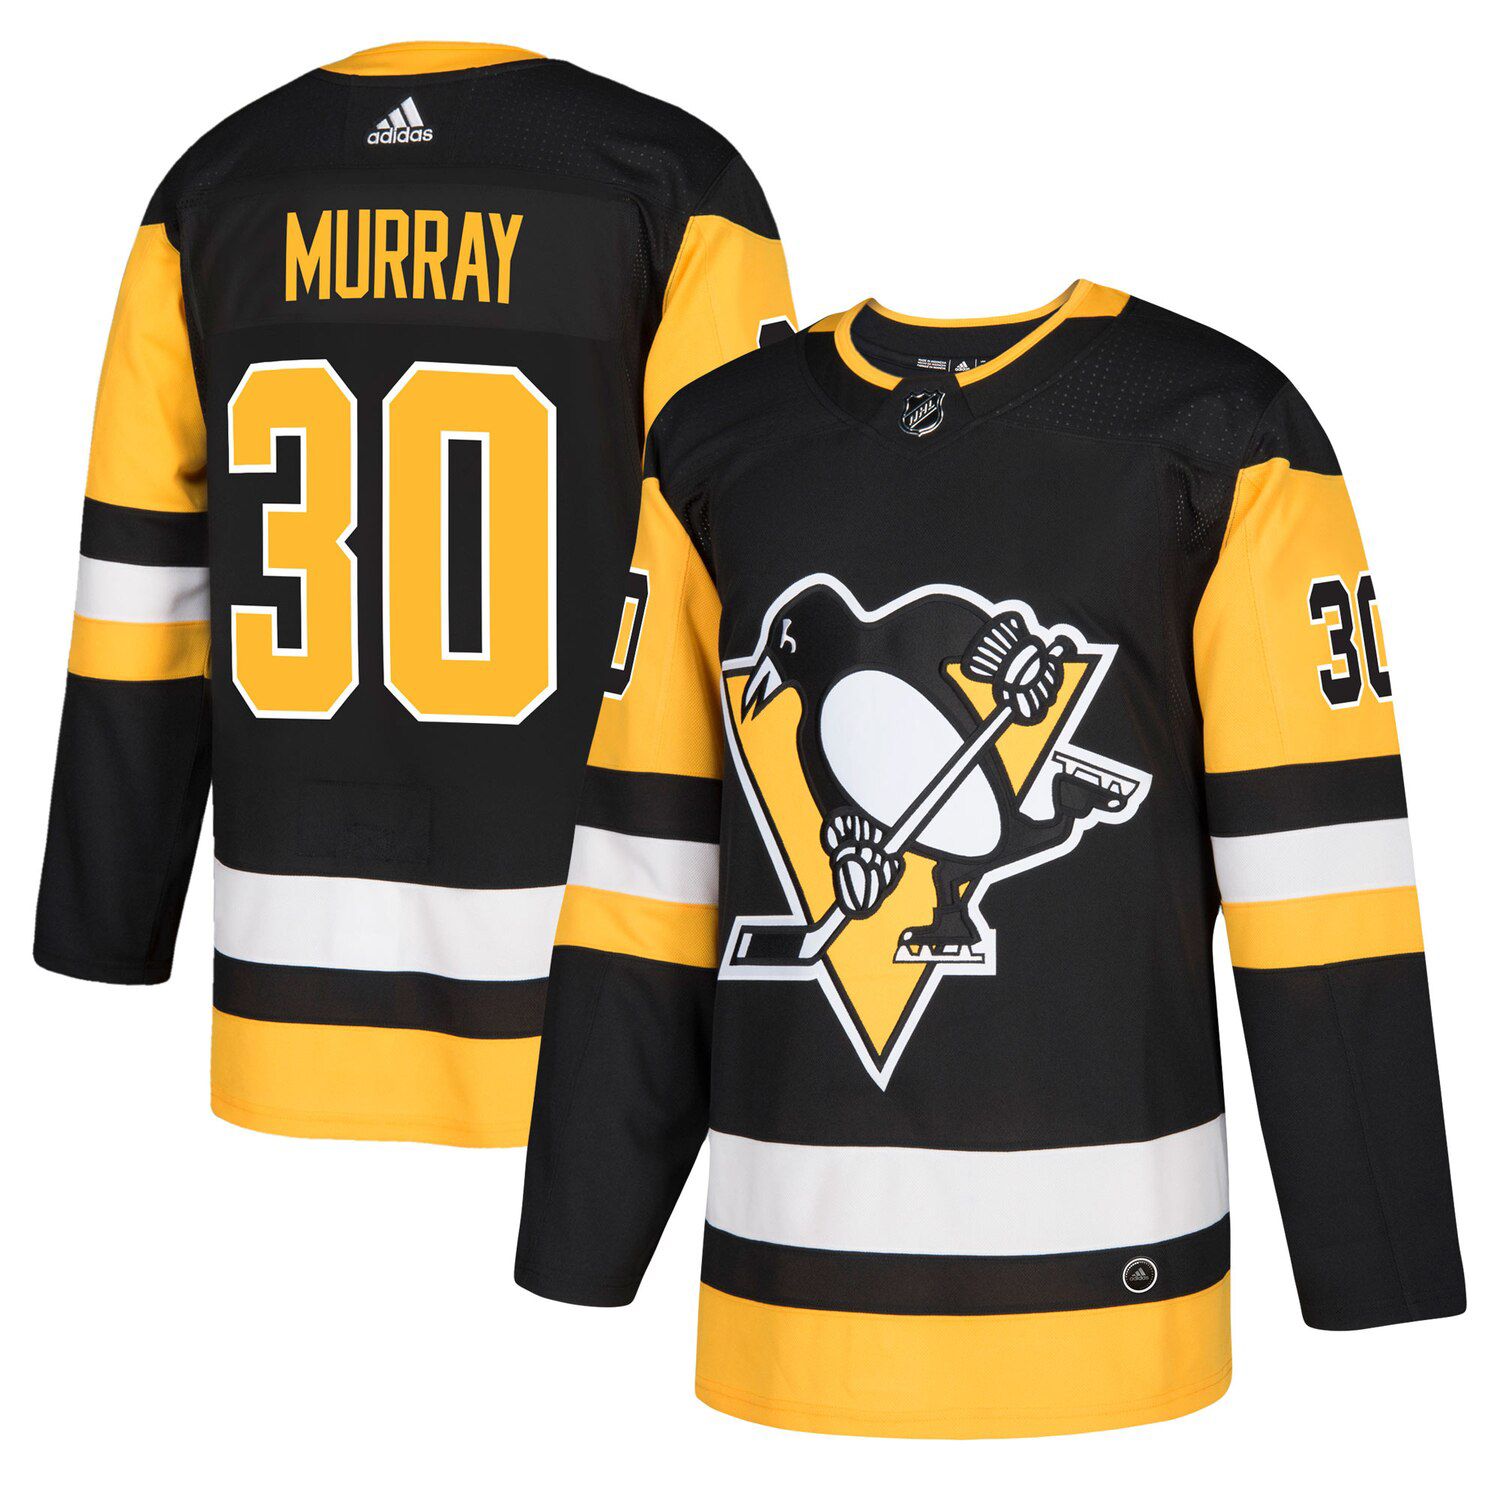 murray penguins jersey